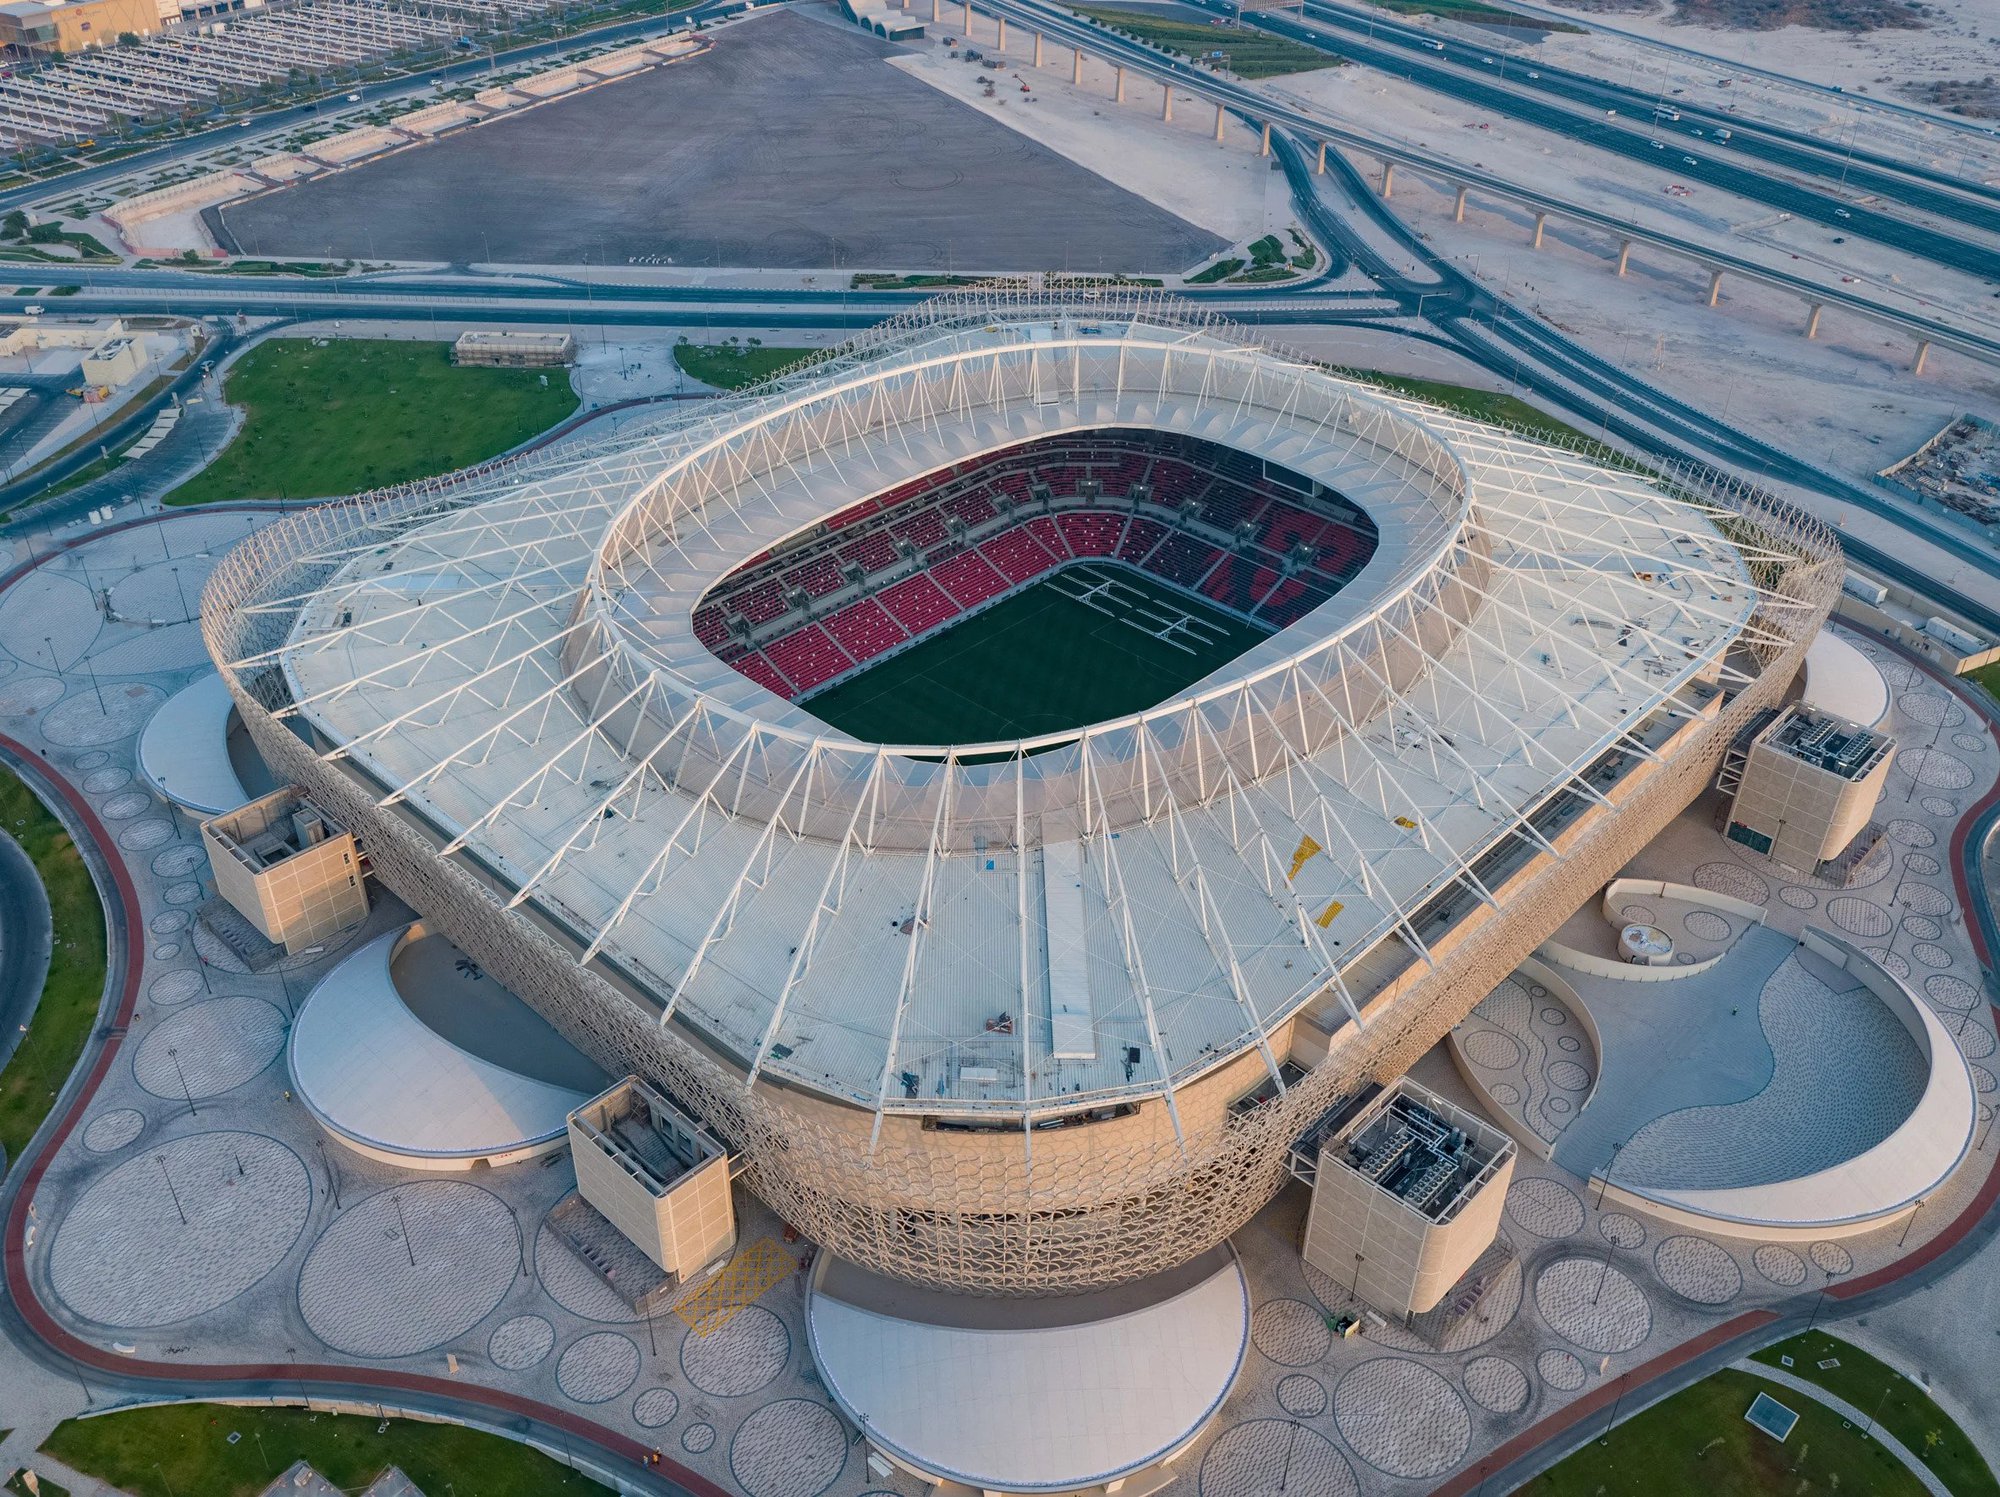 Chiêm ngưỡng 8 sân vận động tuyệt đẹp phục vụ World Cup 2022 - Ảnh 5.